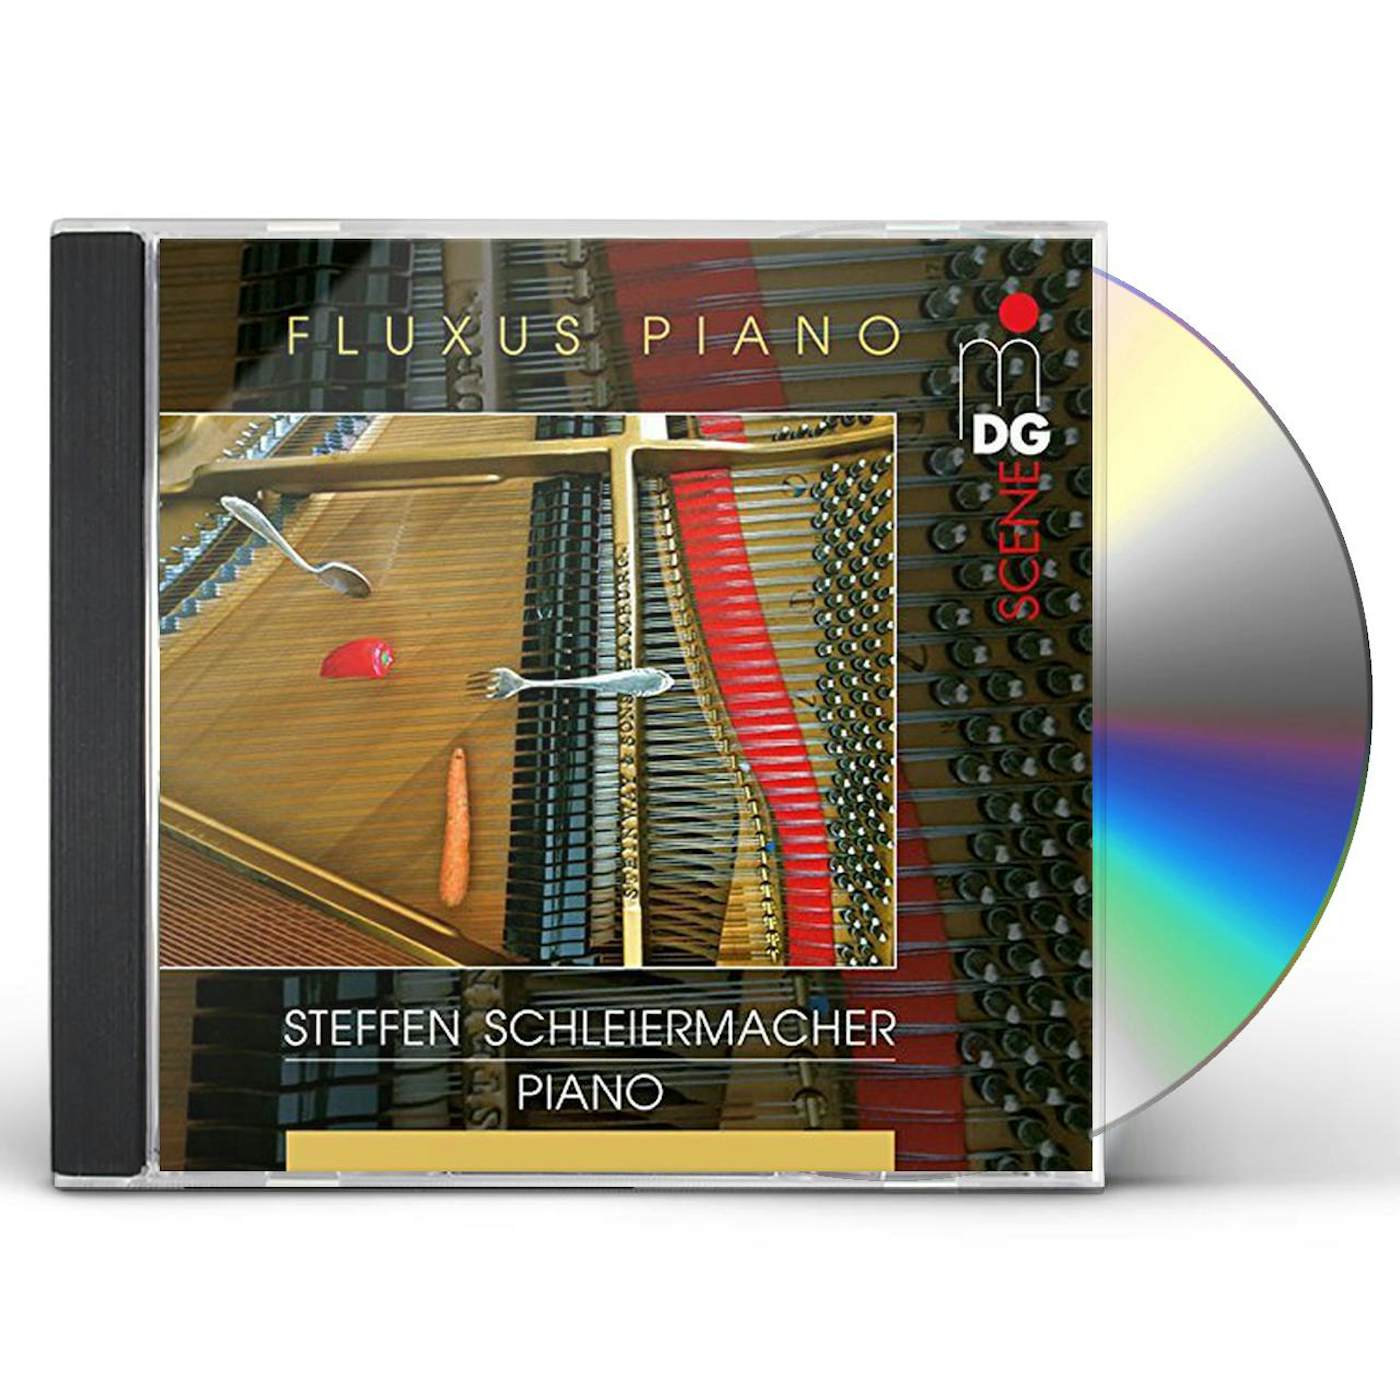 Steffen Schleiermacher FLUXUS PIANO CD